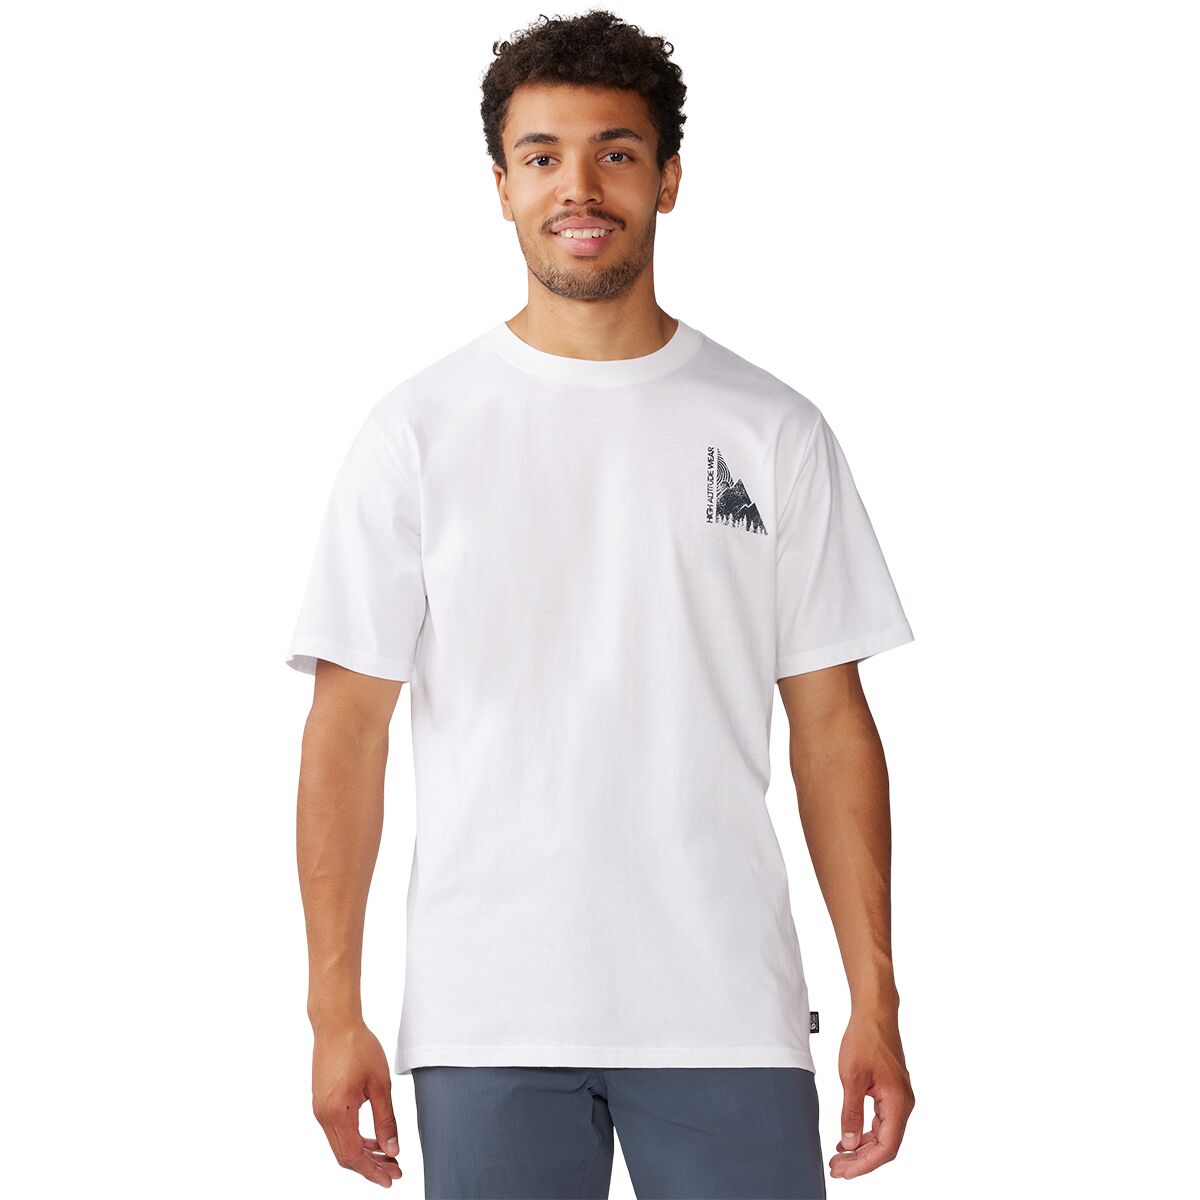 Jagged Peak Short-Sleeve T-Shirt - Men